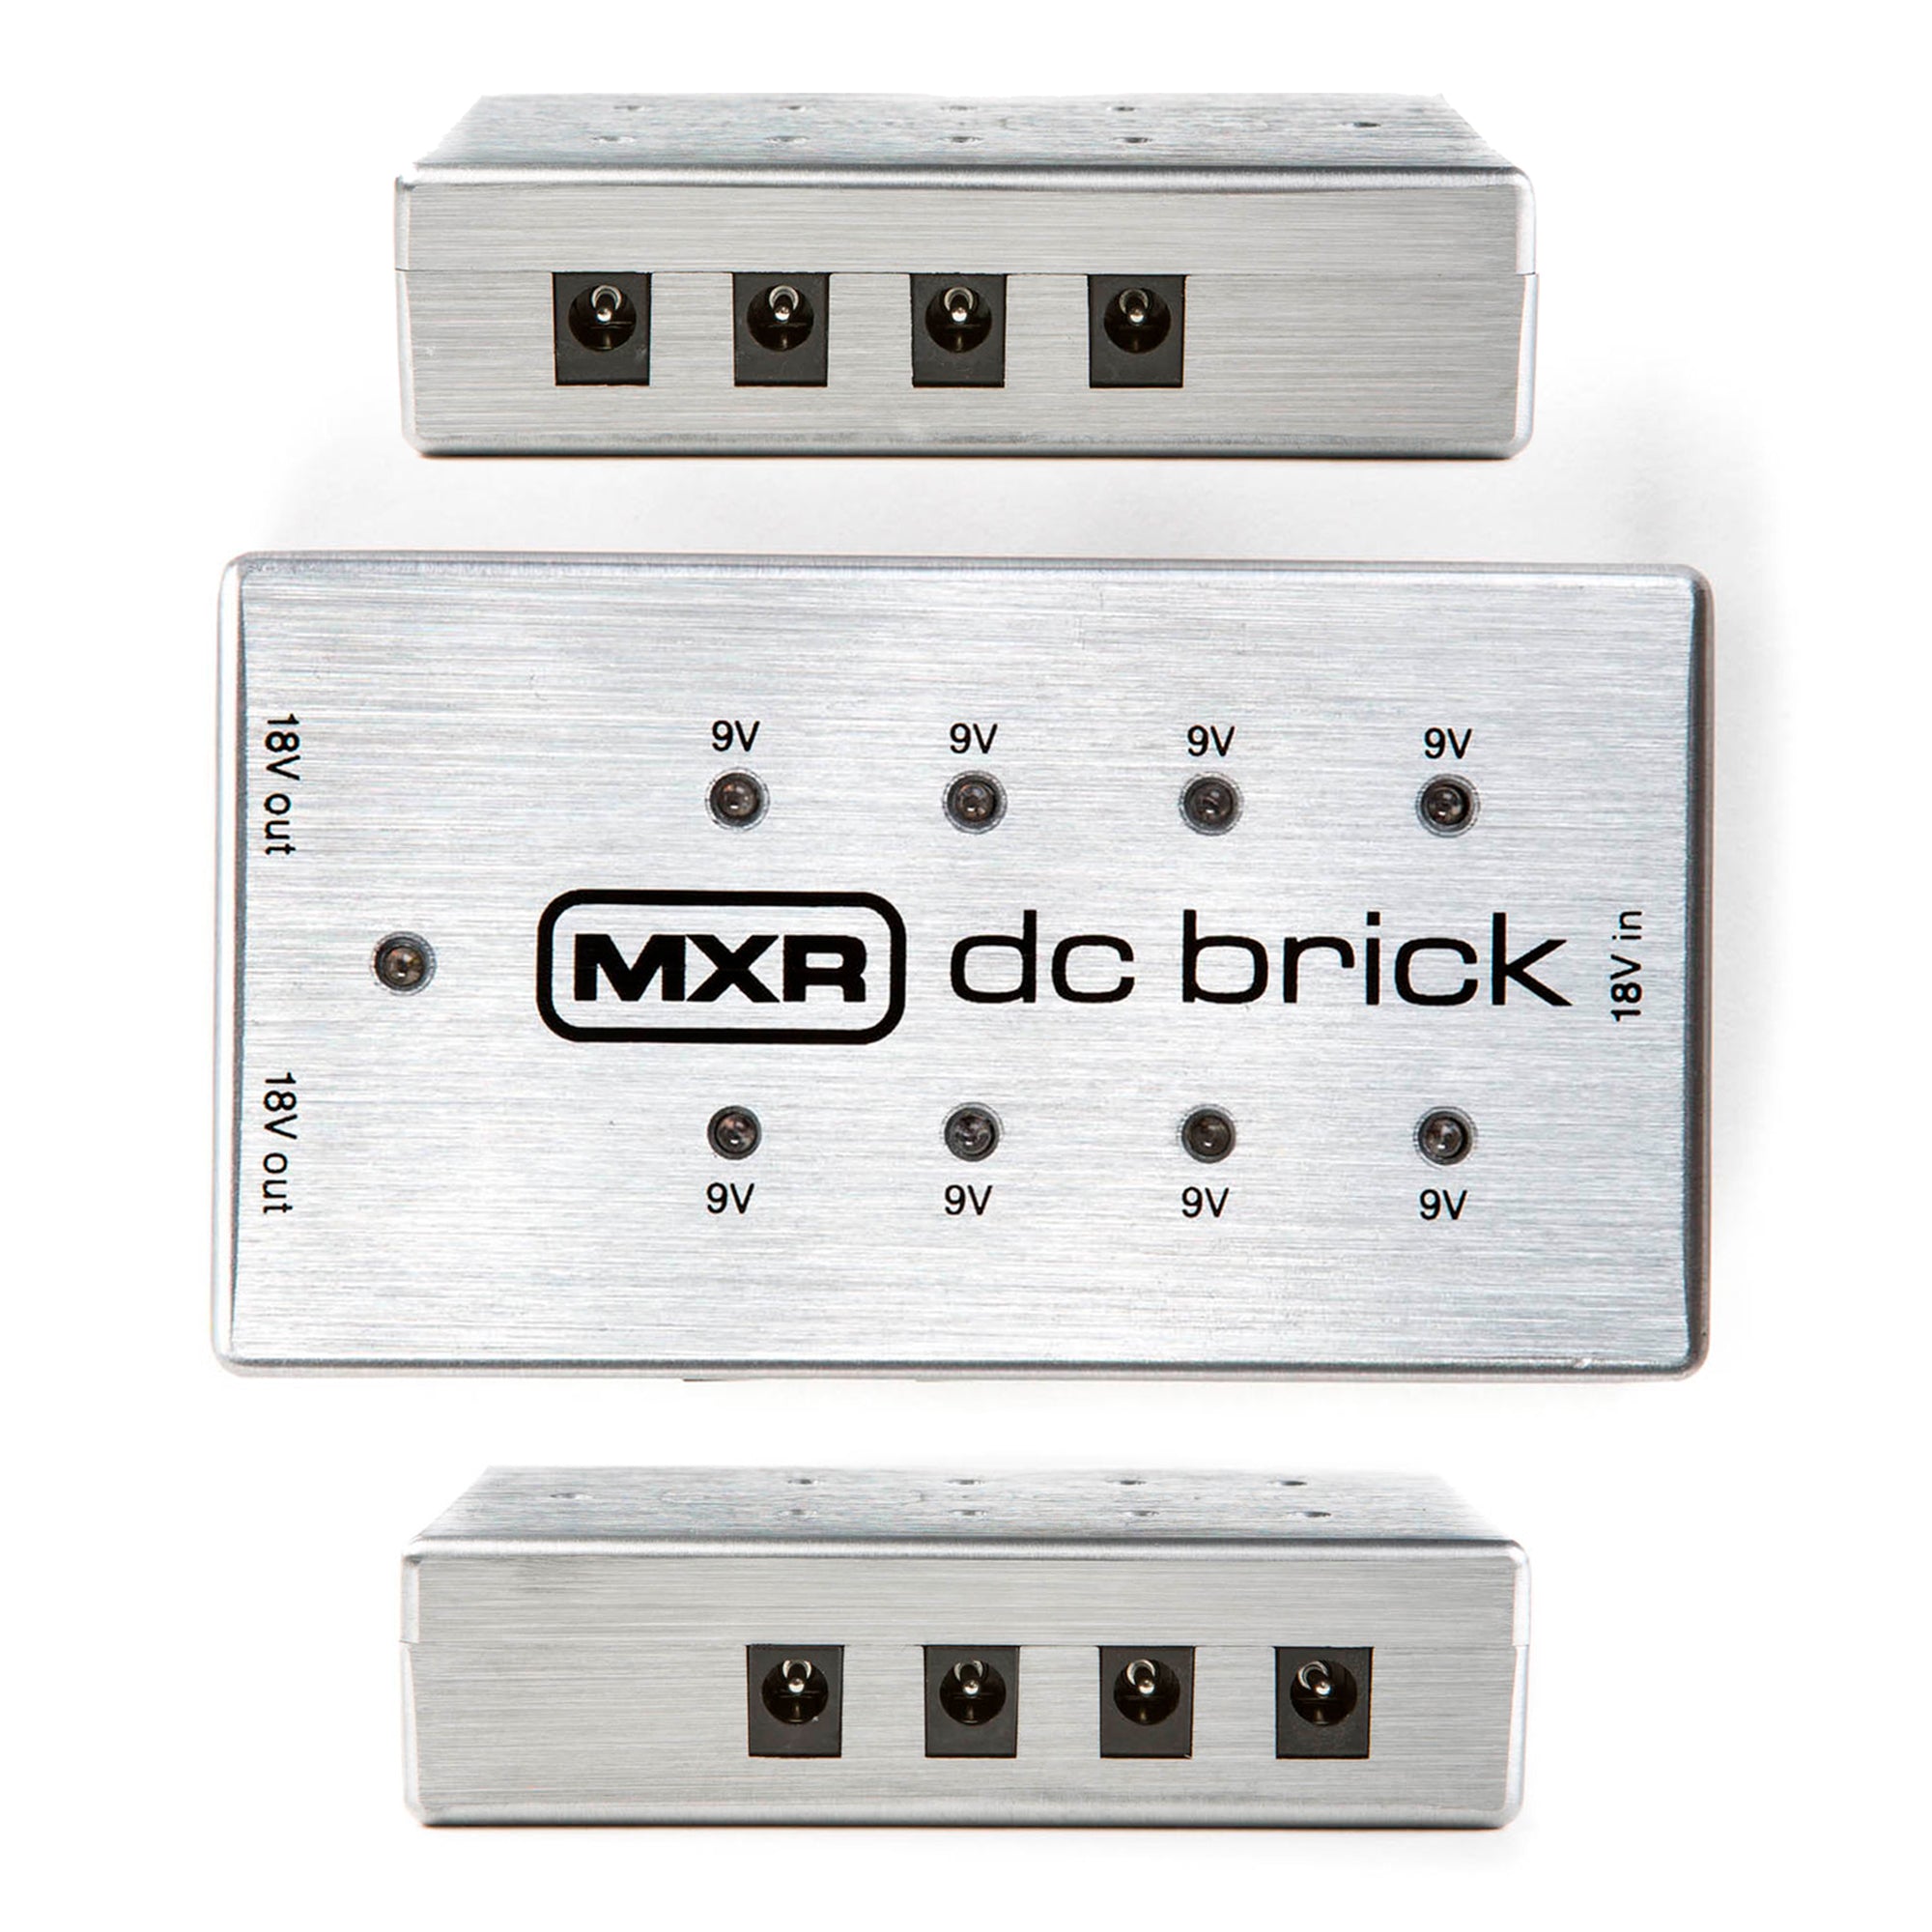 Fuente de poder power supply DC Brick Mxr - M237EU